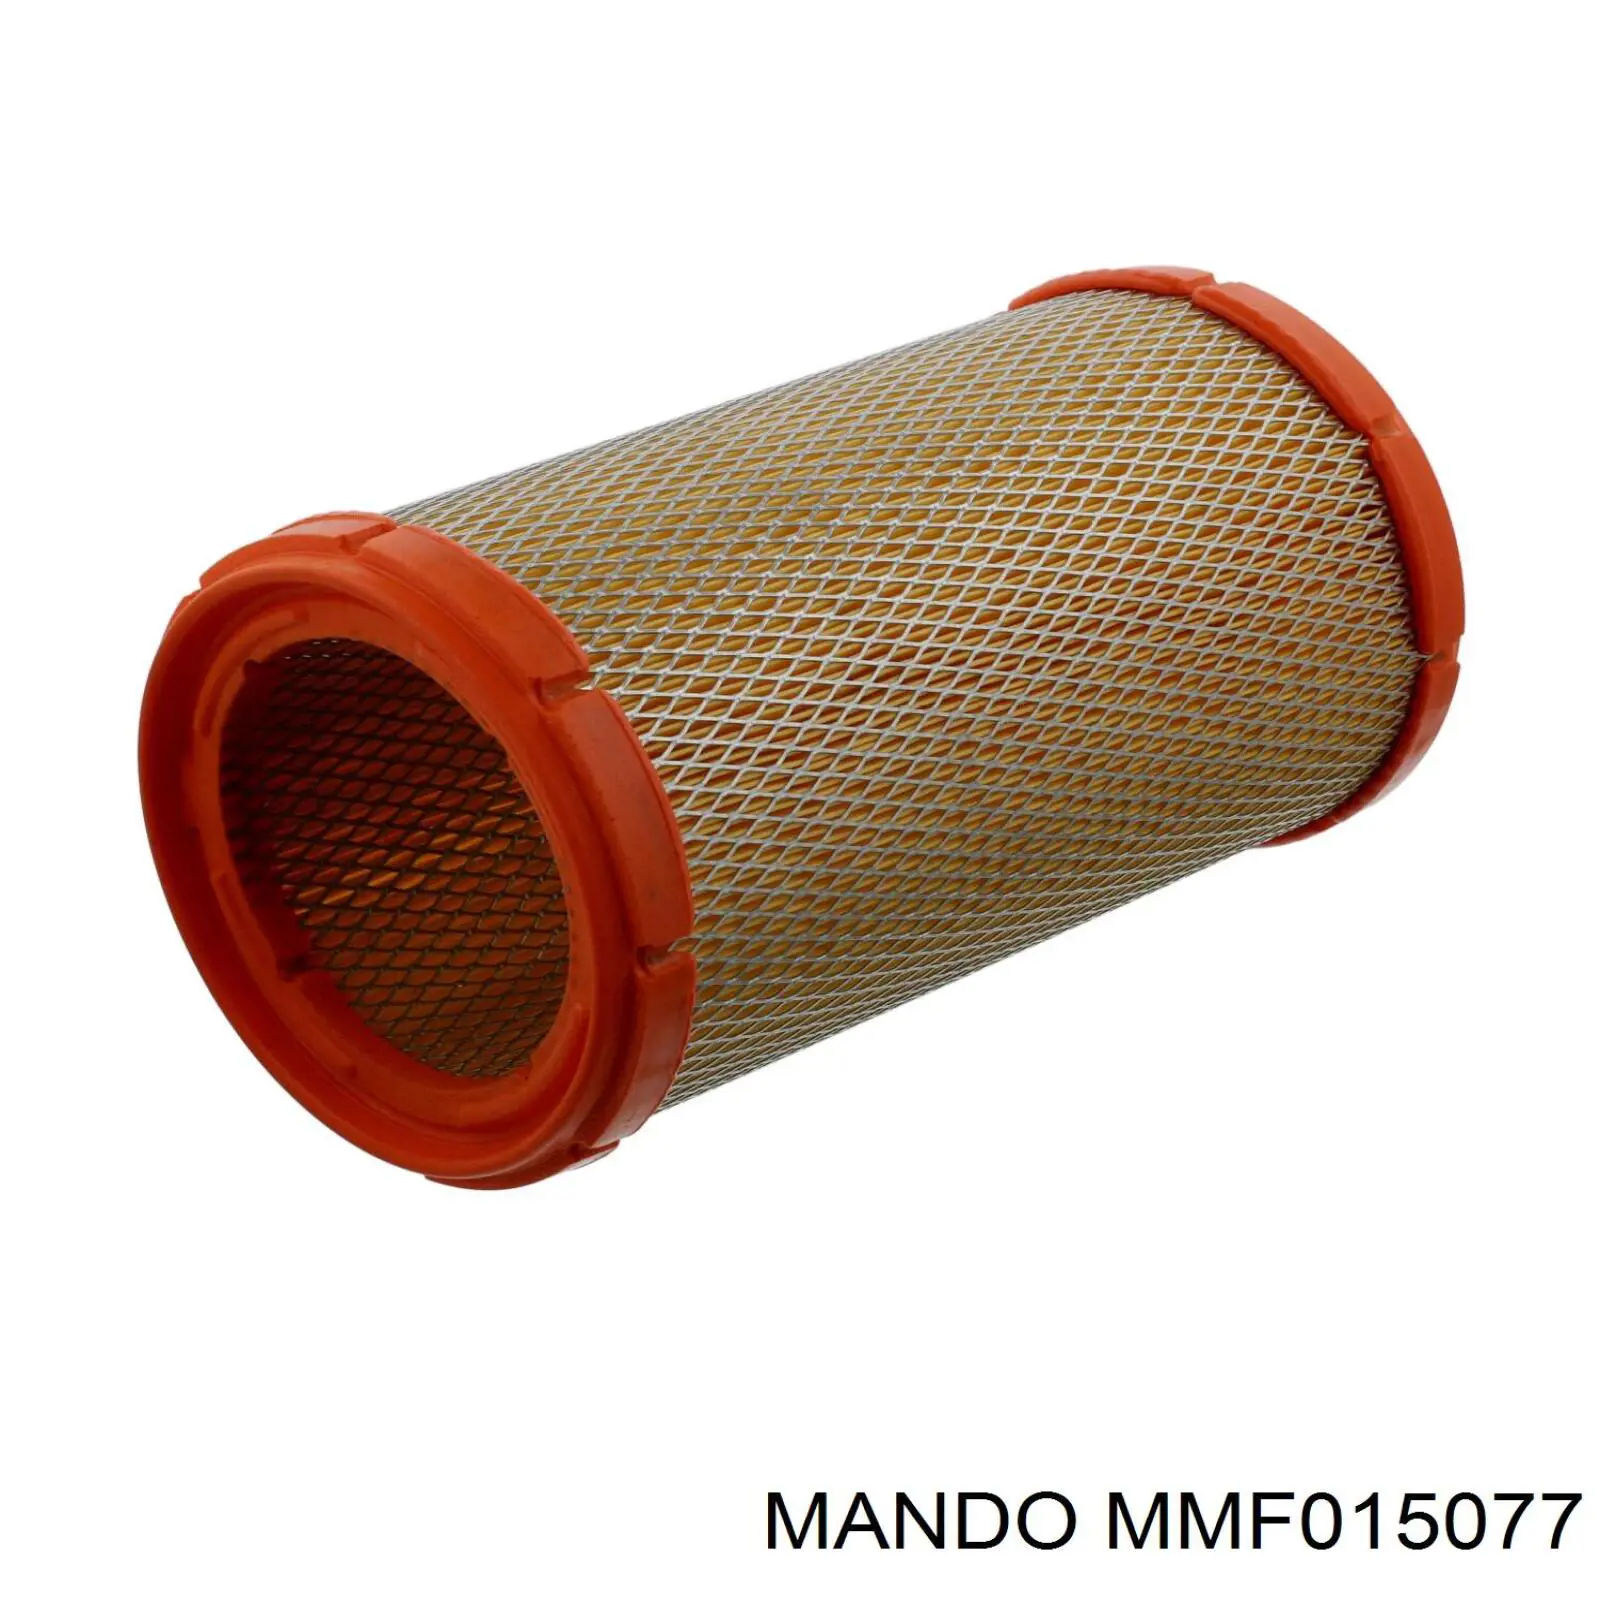 MMF015077 Mando фільтр повітряний